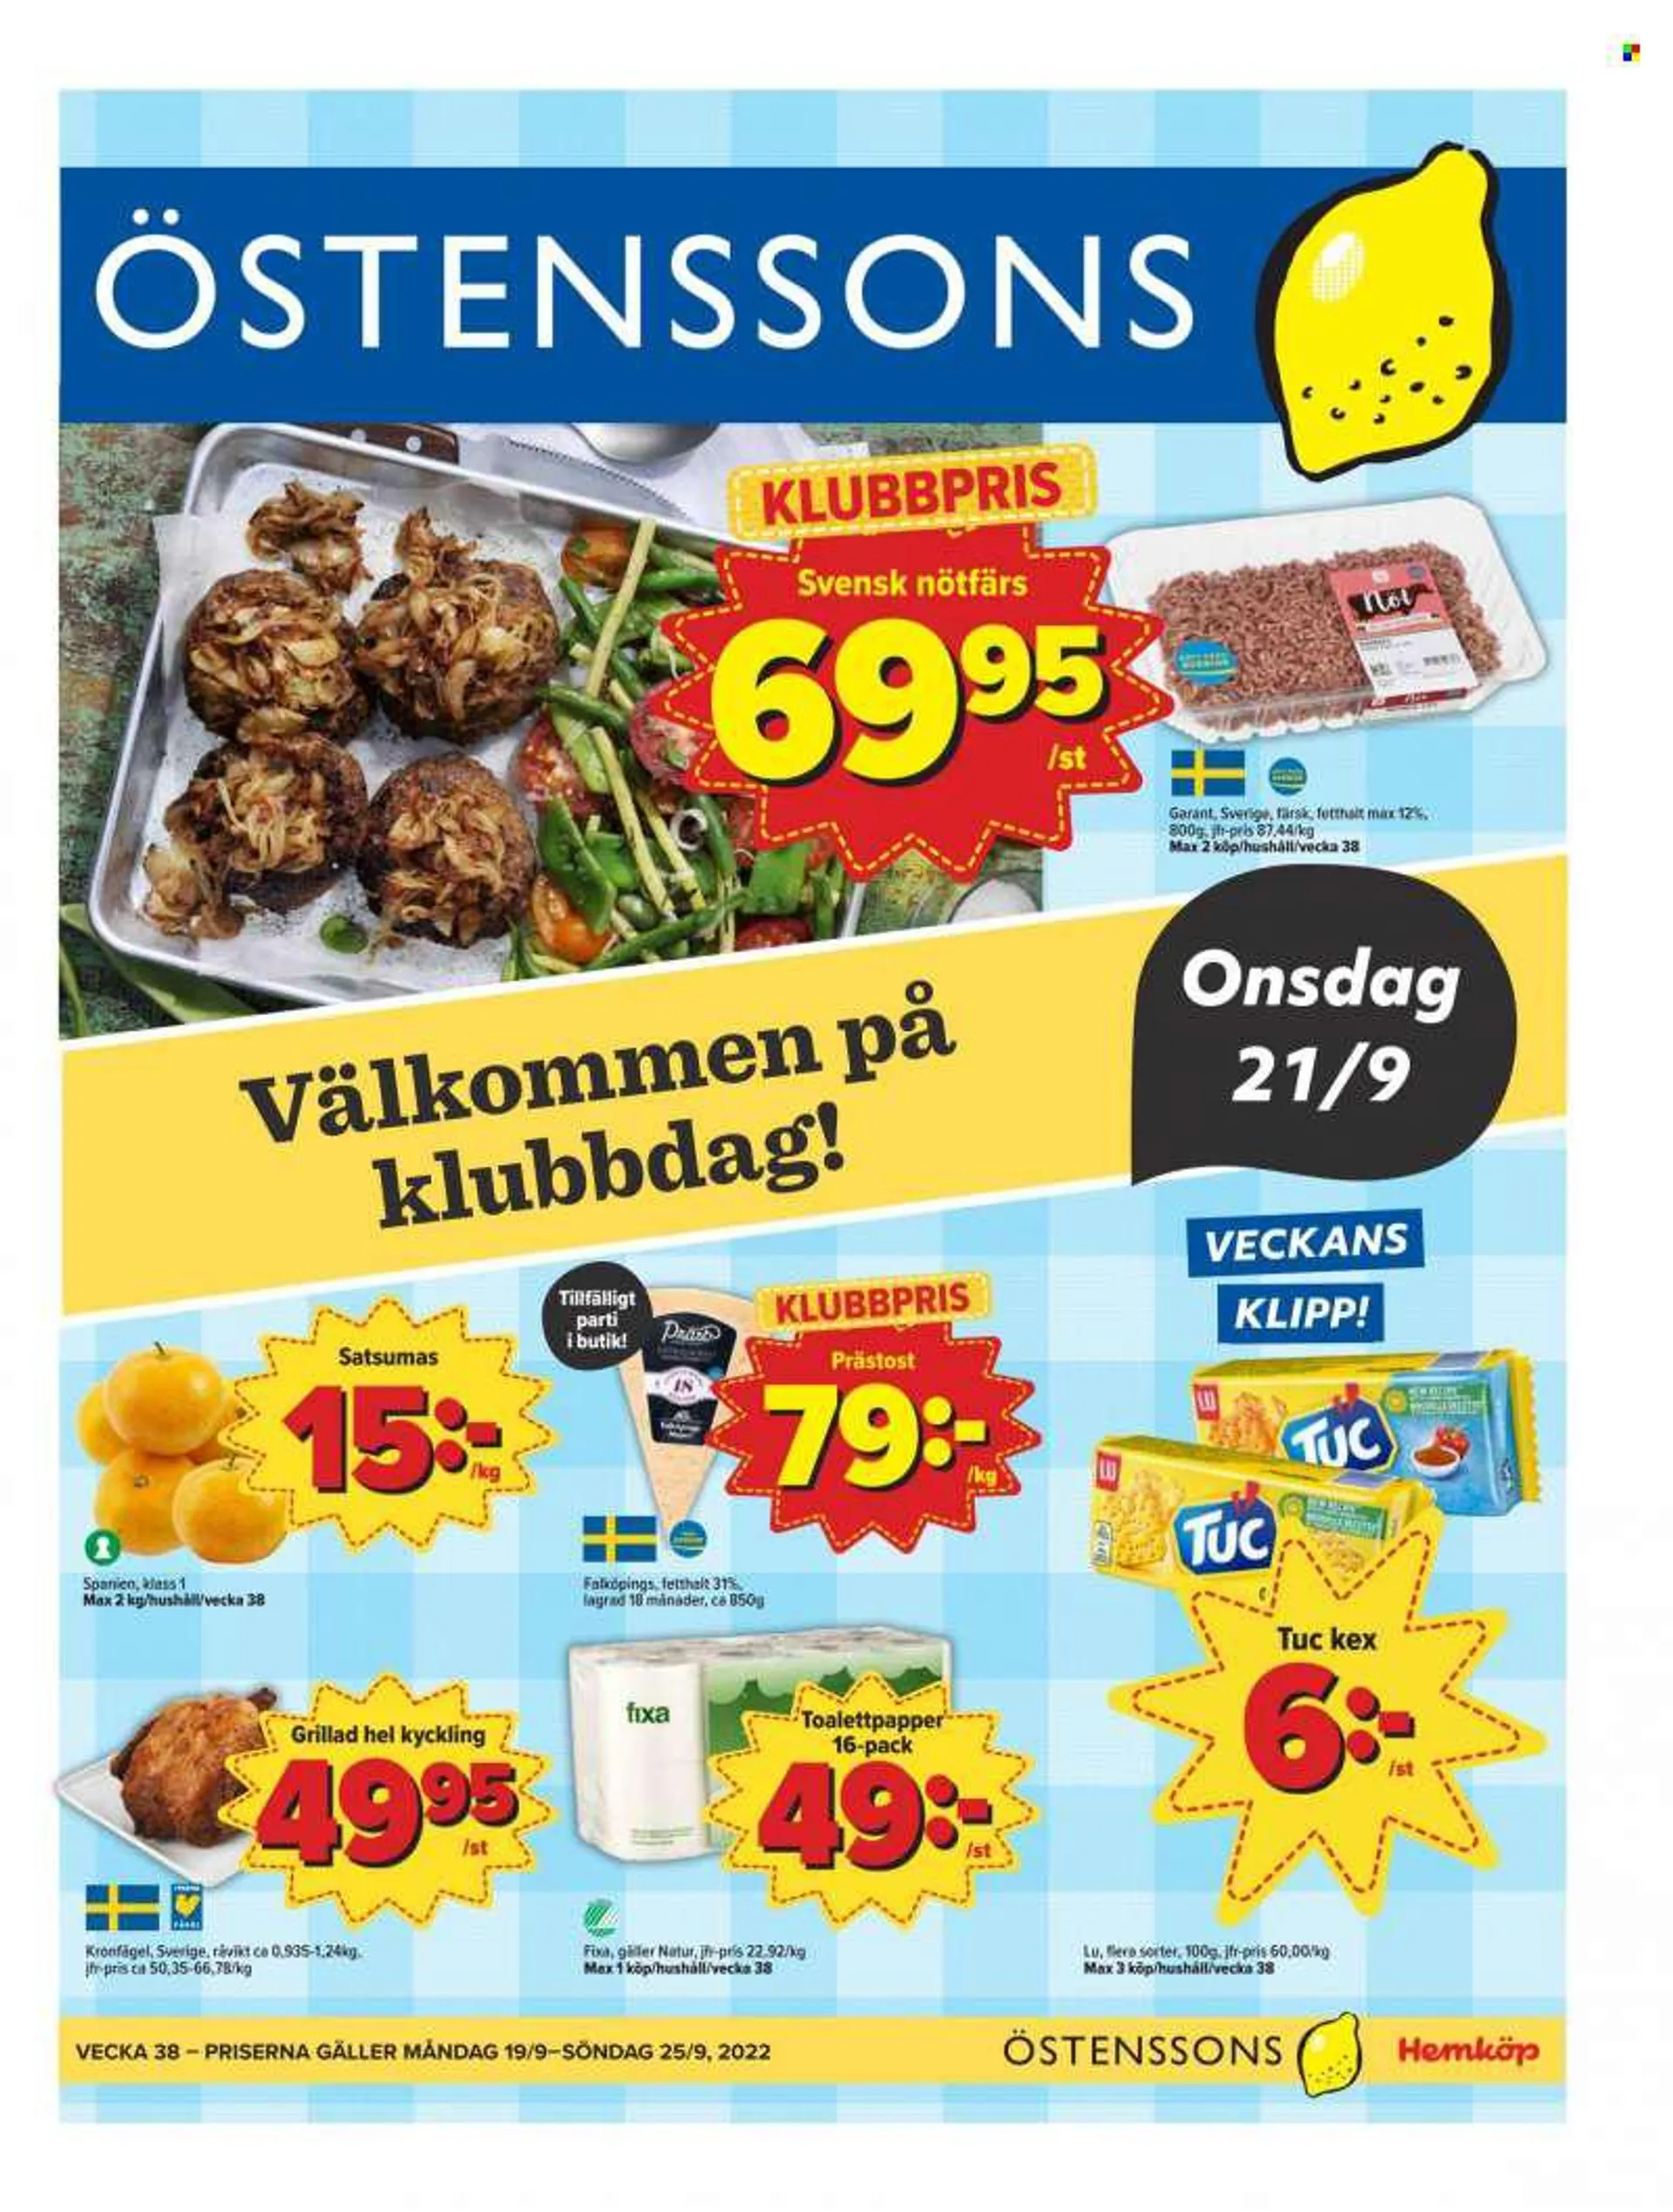 Östenssons reklamblad - 19/9 2022 - 25/9 2022 - varor från reklamblad - hel kyckling, kyckling, satsumas, nötfärs, Präst, kex, toalettpapper. Sida 1.